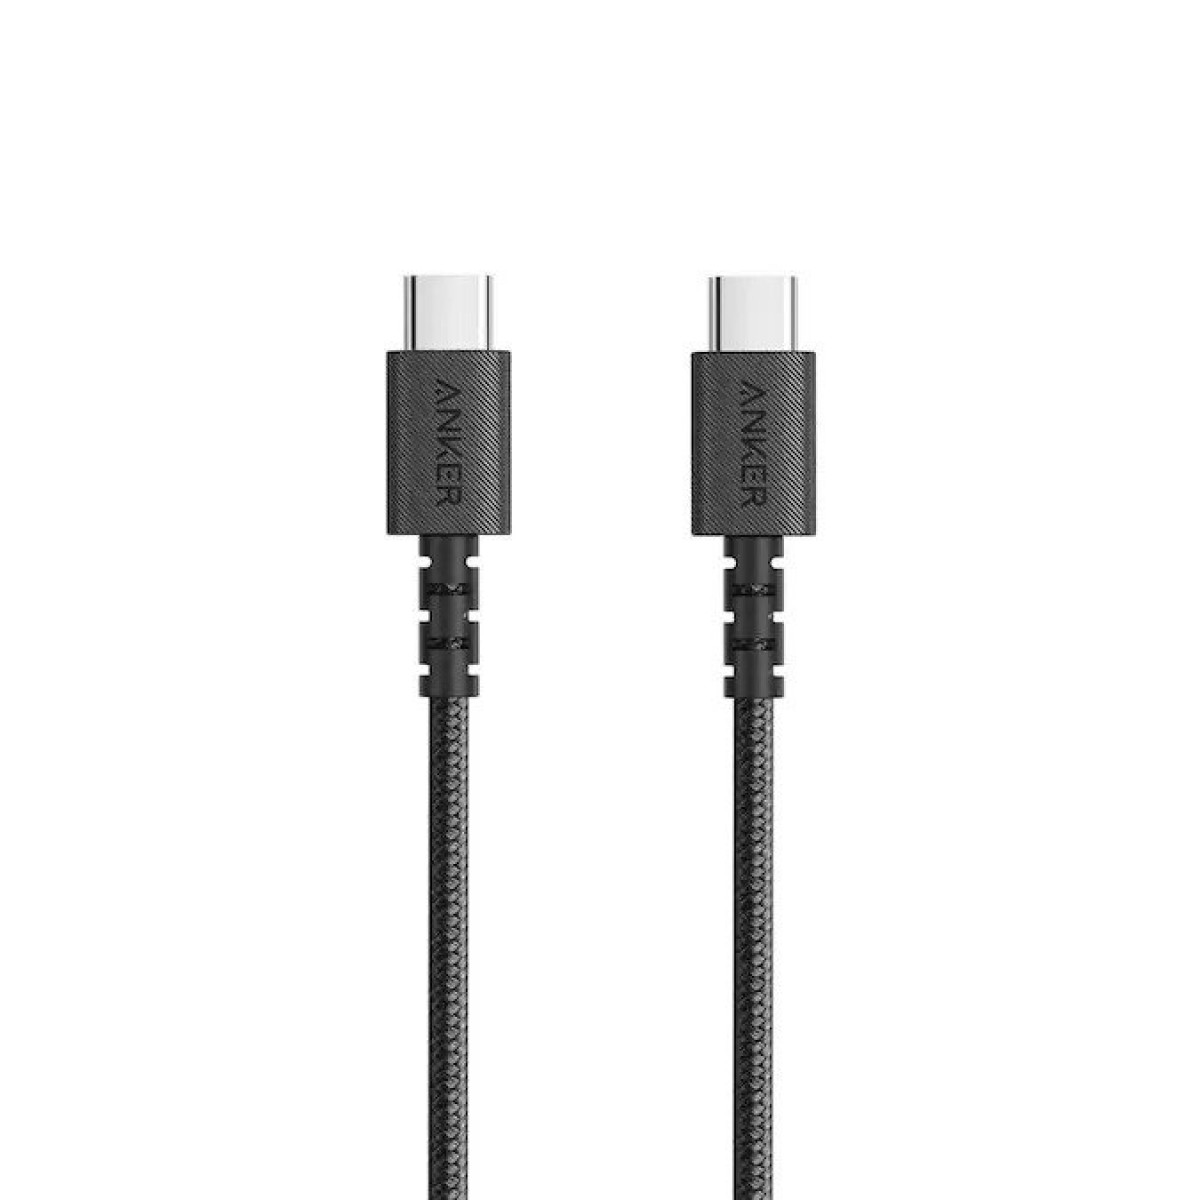 كيبل انكر باور لاين سيليكت بلس للتوصيل بين منفذ USB-C‏ و USB-C 2.0‏ بطول 6 قدم